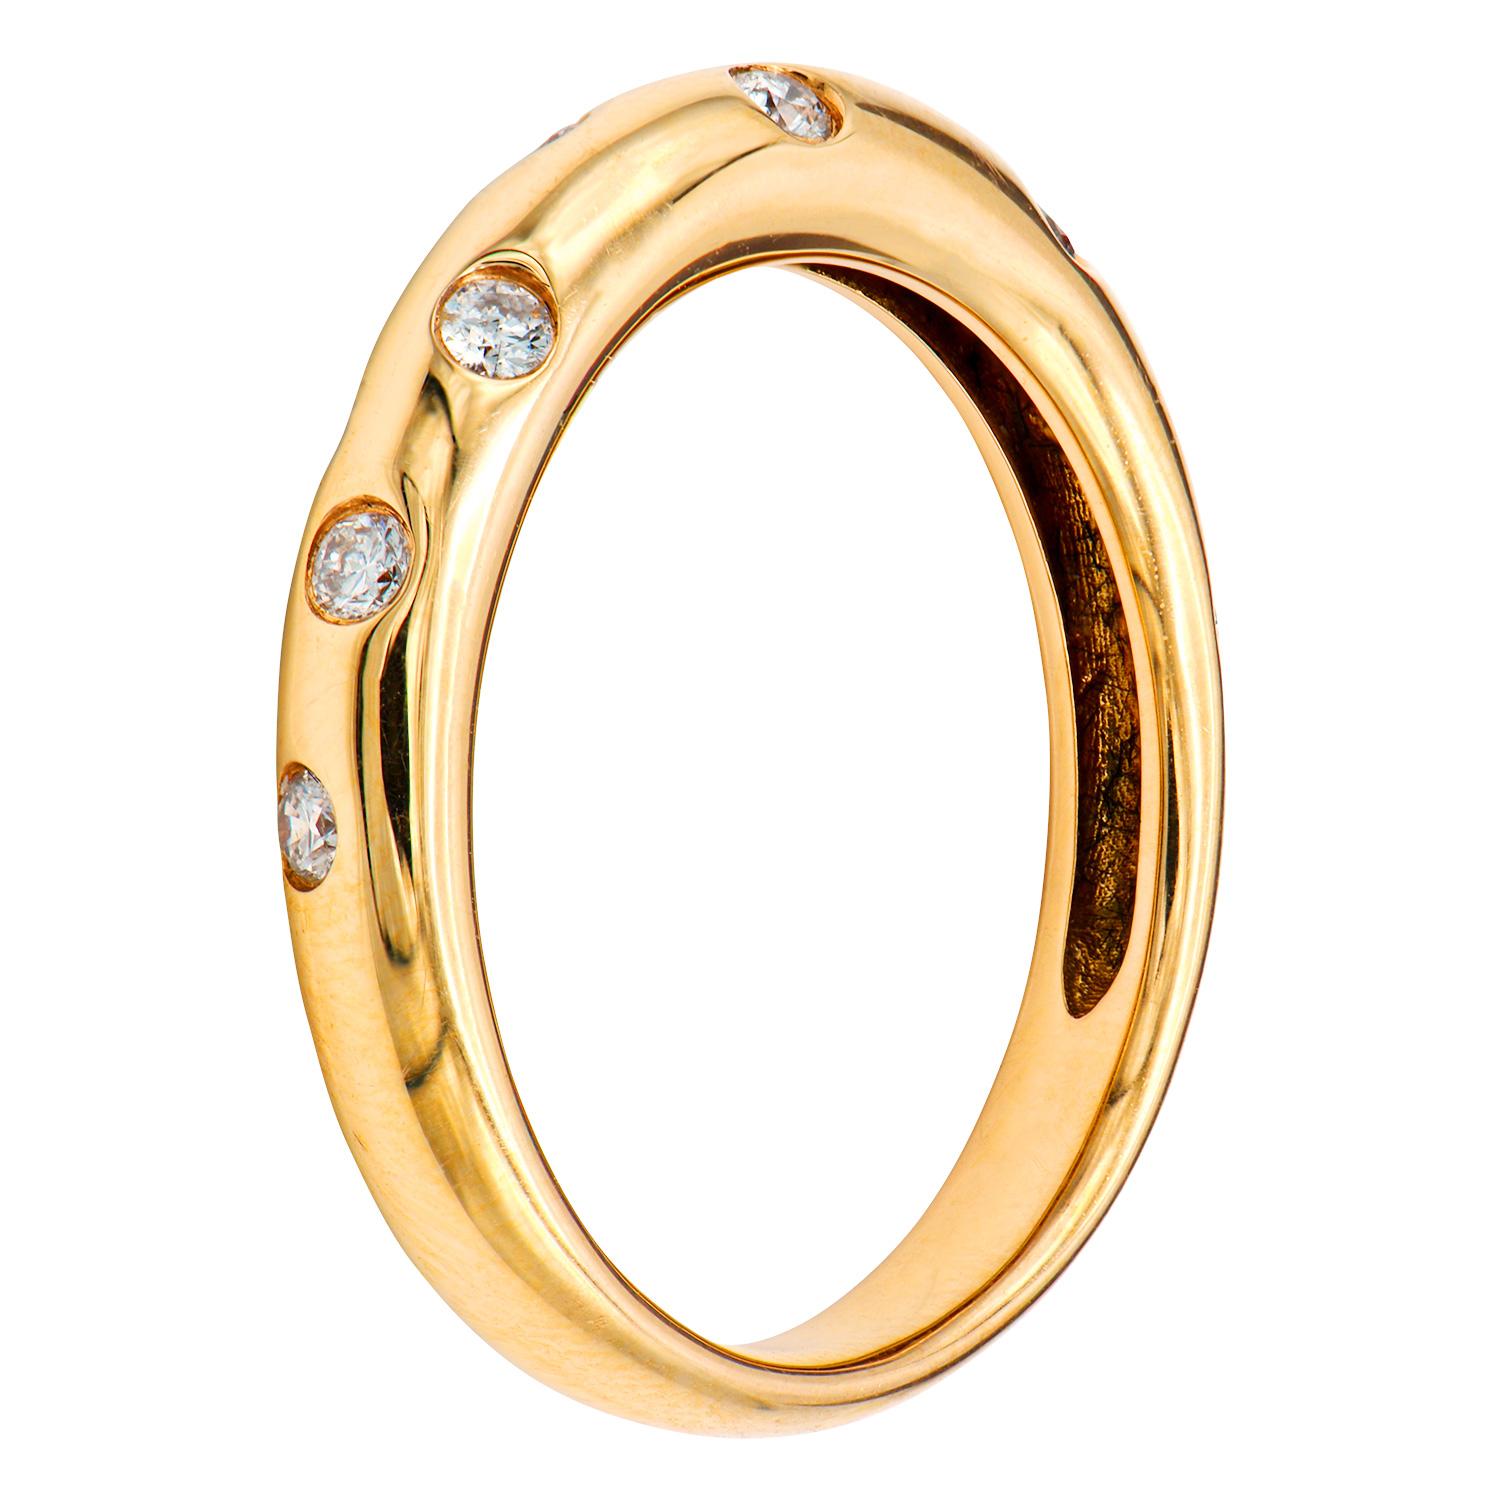 Der schöne, komfortable Ring ist aus 3,4 Gramm 18 Karat Roségold gefertigt. Über den Ring sind 10 runde Diamanten der Farbe G VS2 mit insgesamt 0,3 Karat verstreut. Dieser Ring hat die Größe 6,5.